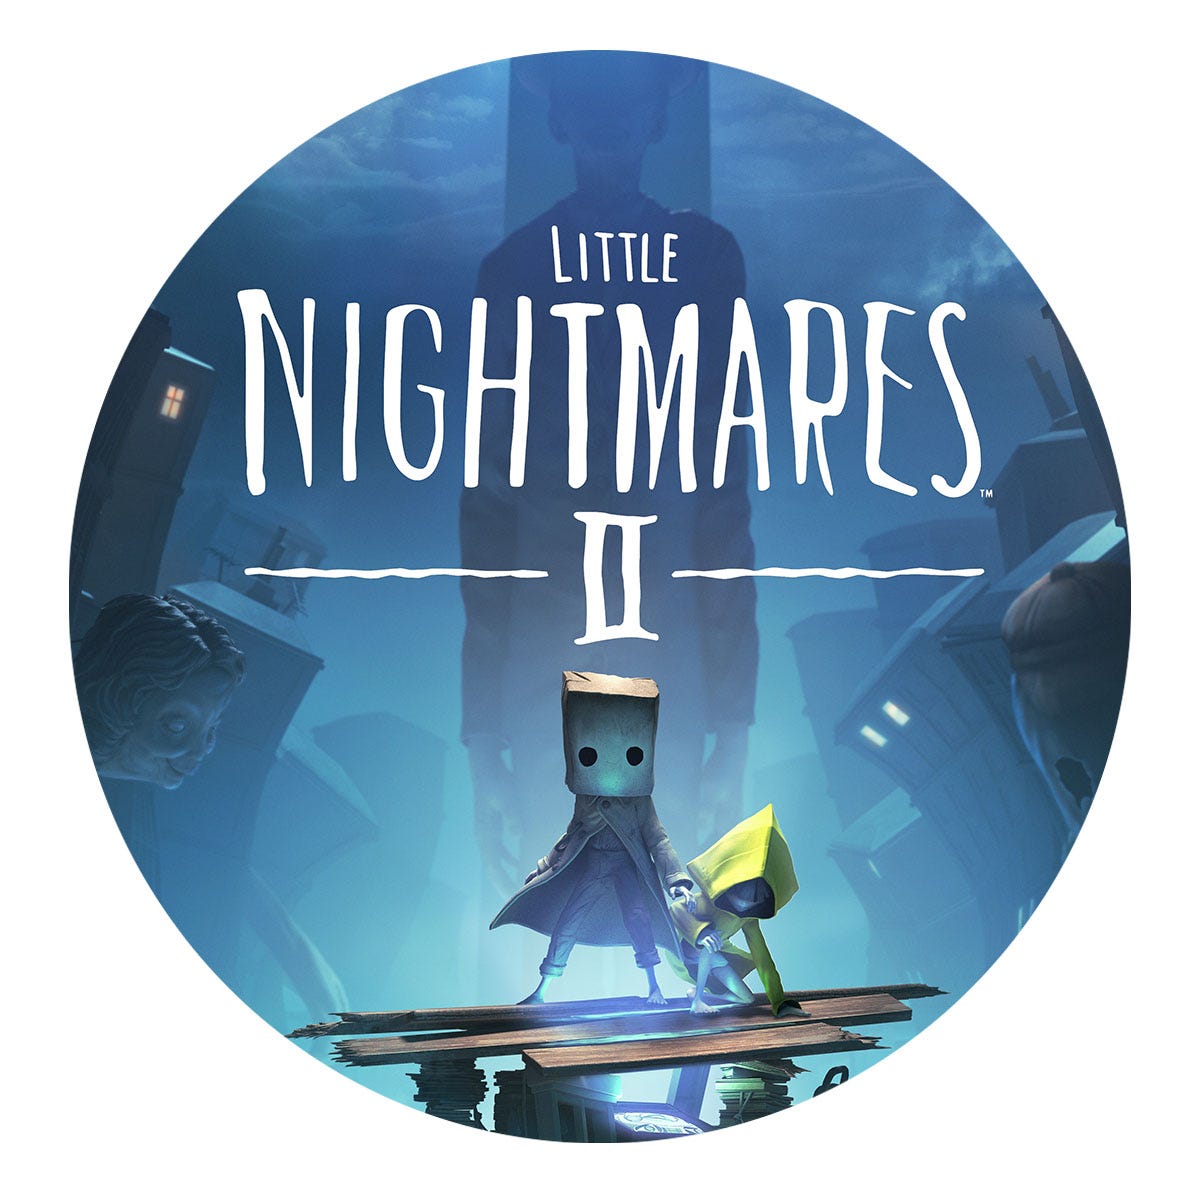 Review: Little Nightmares II